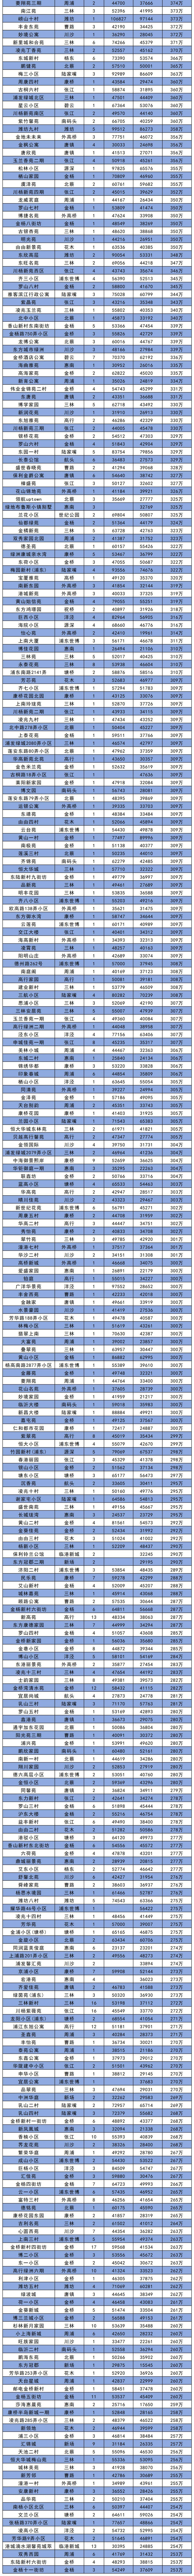 上海各区10月二手房价大全！最贵二手房在长宁